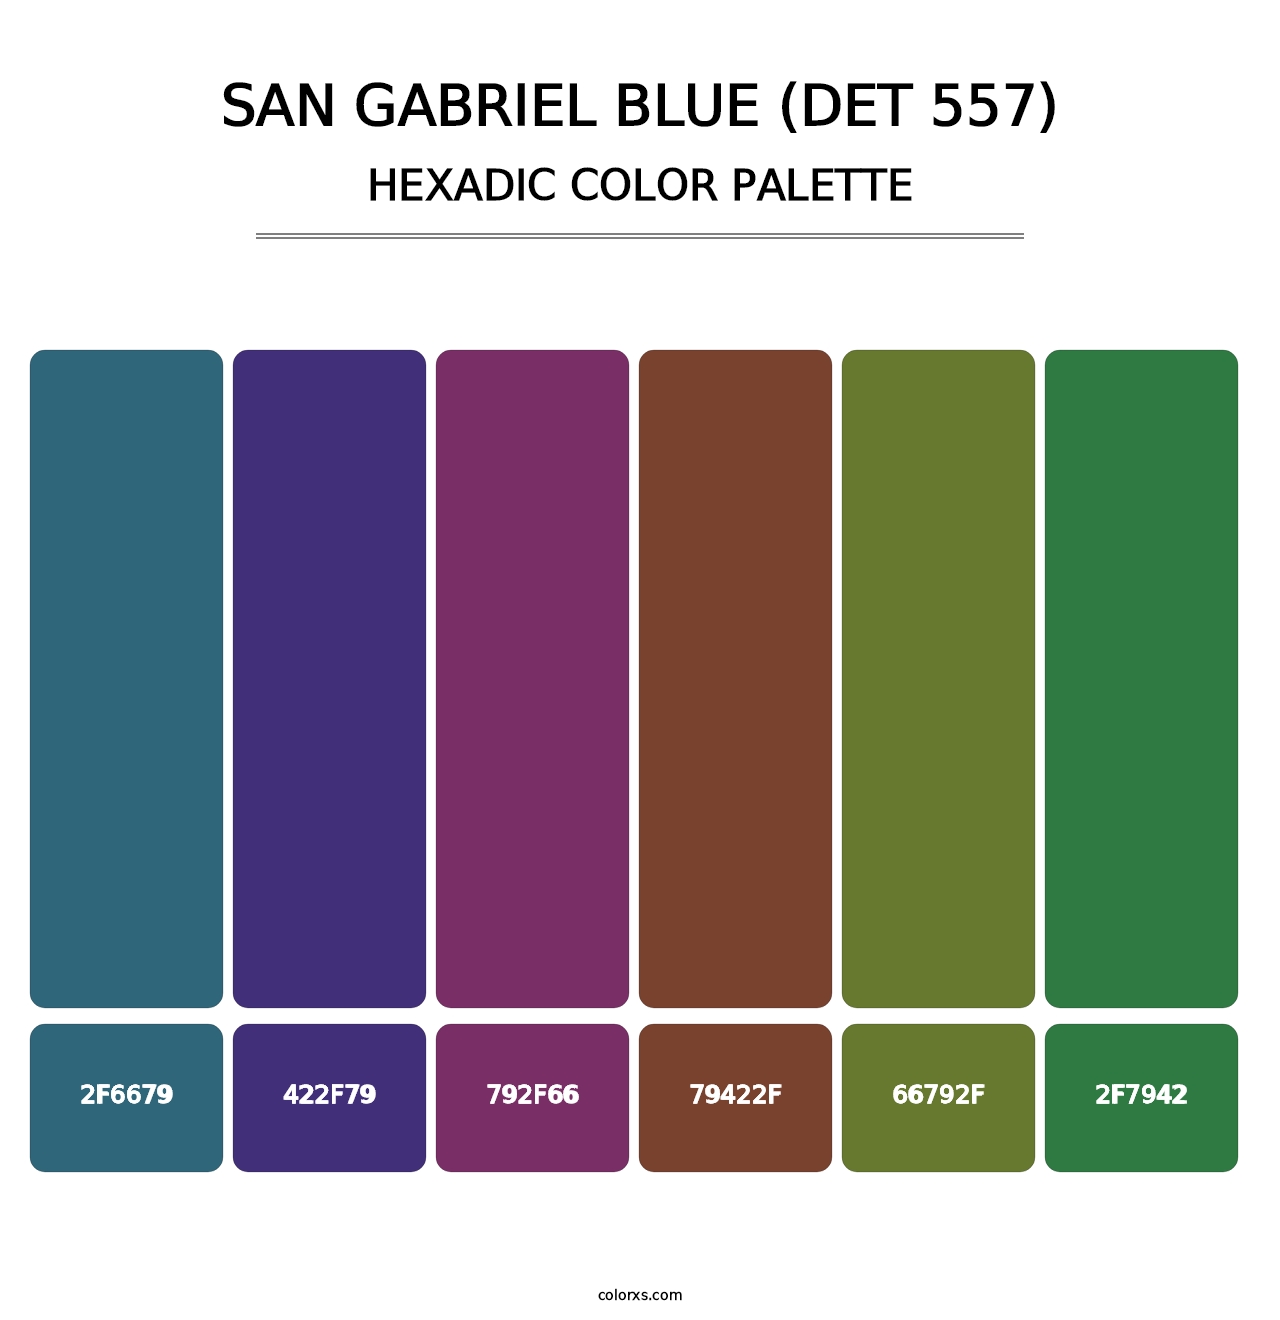 San Gabriel Blue (DET 557) - Hexadic Color Palette